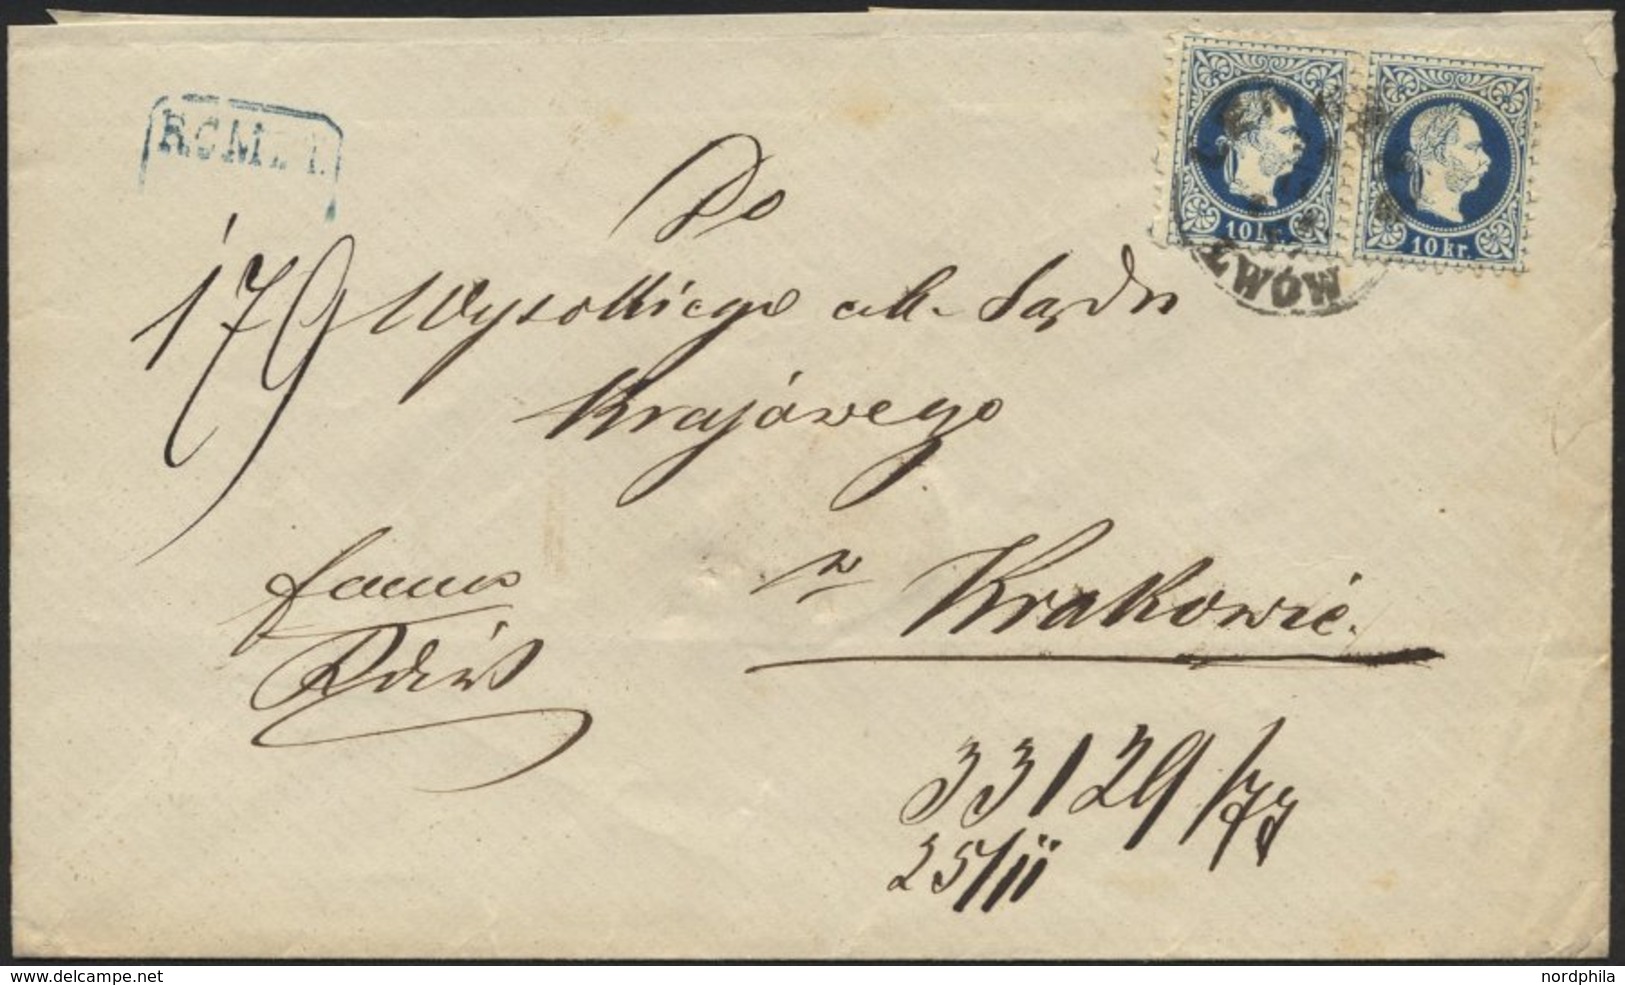 ÖSTERREICH 38II Paar BRIEF, 1882, 10 Kr. Blau, Feiner Druck, Im Waagerechten Paar Auf Reco-Brief Nach Krakau, Feinst - Used Stamps